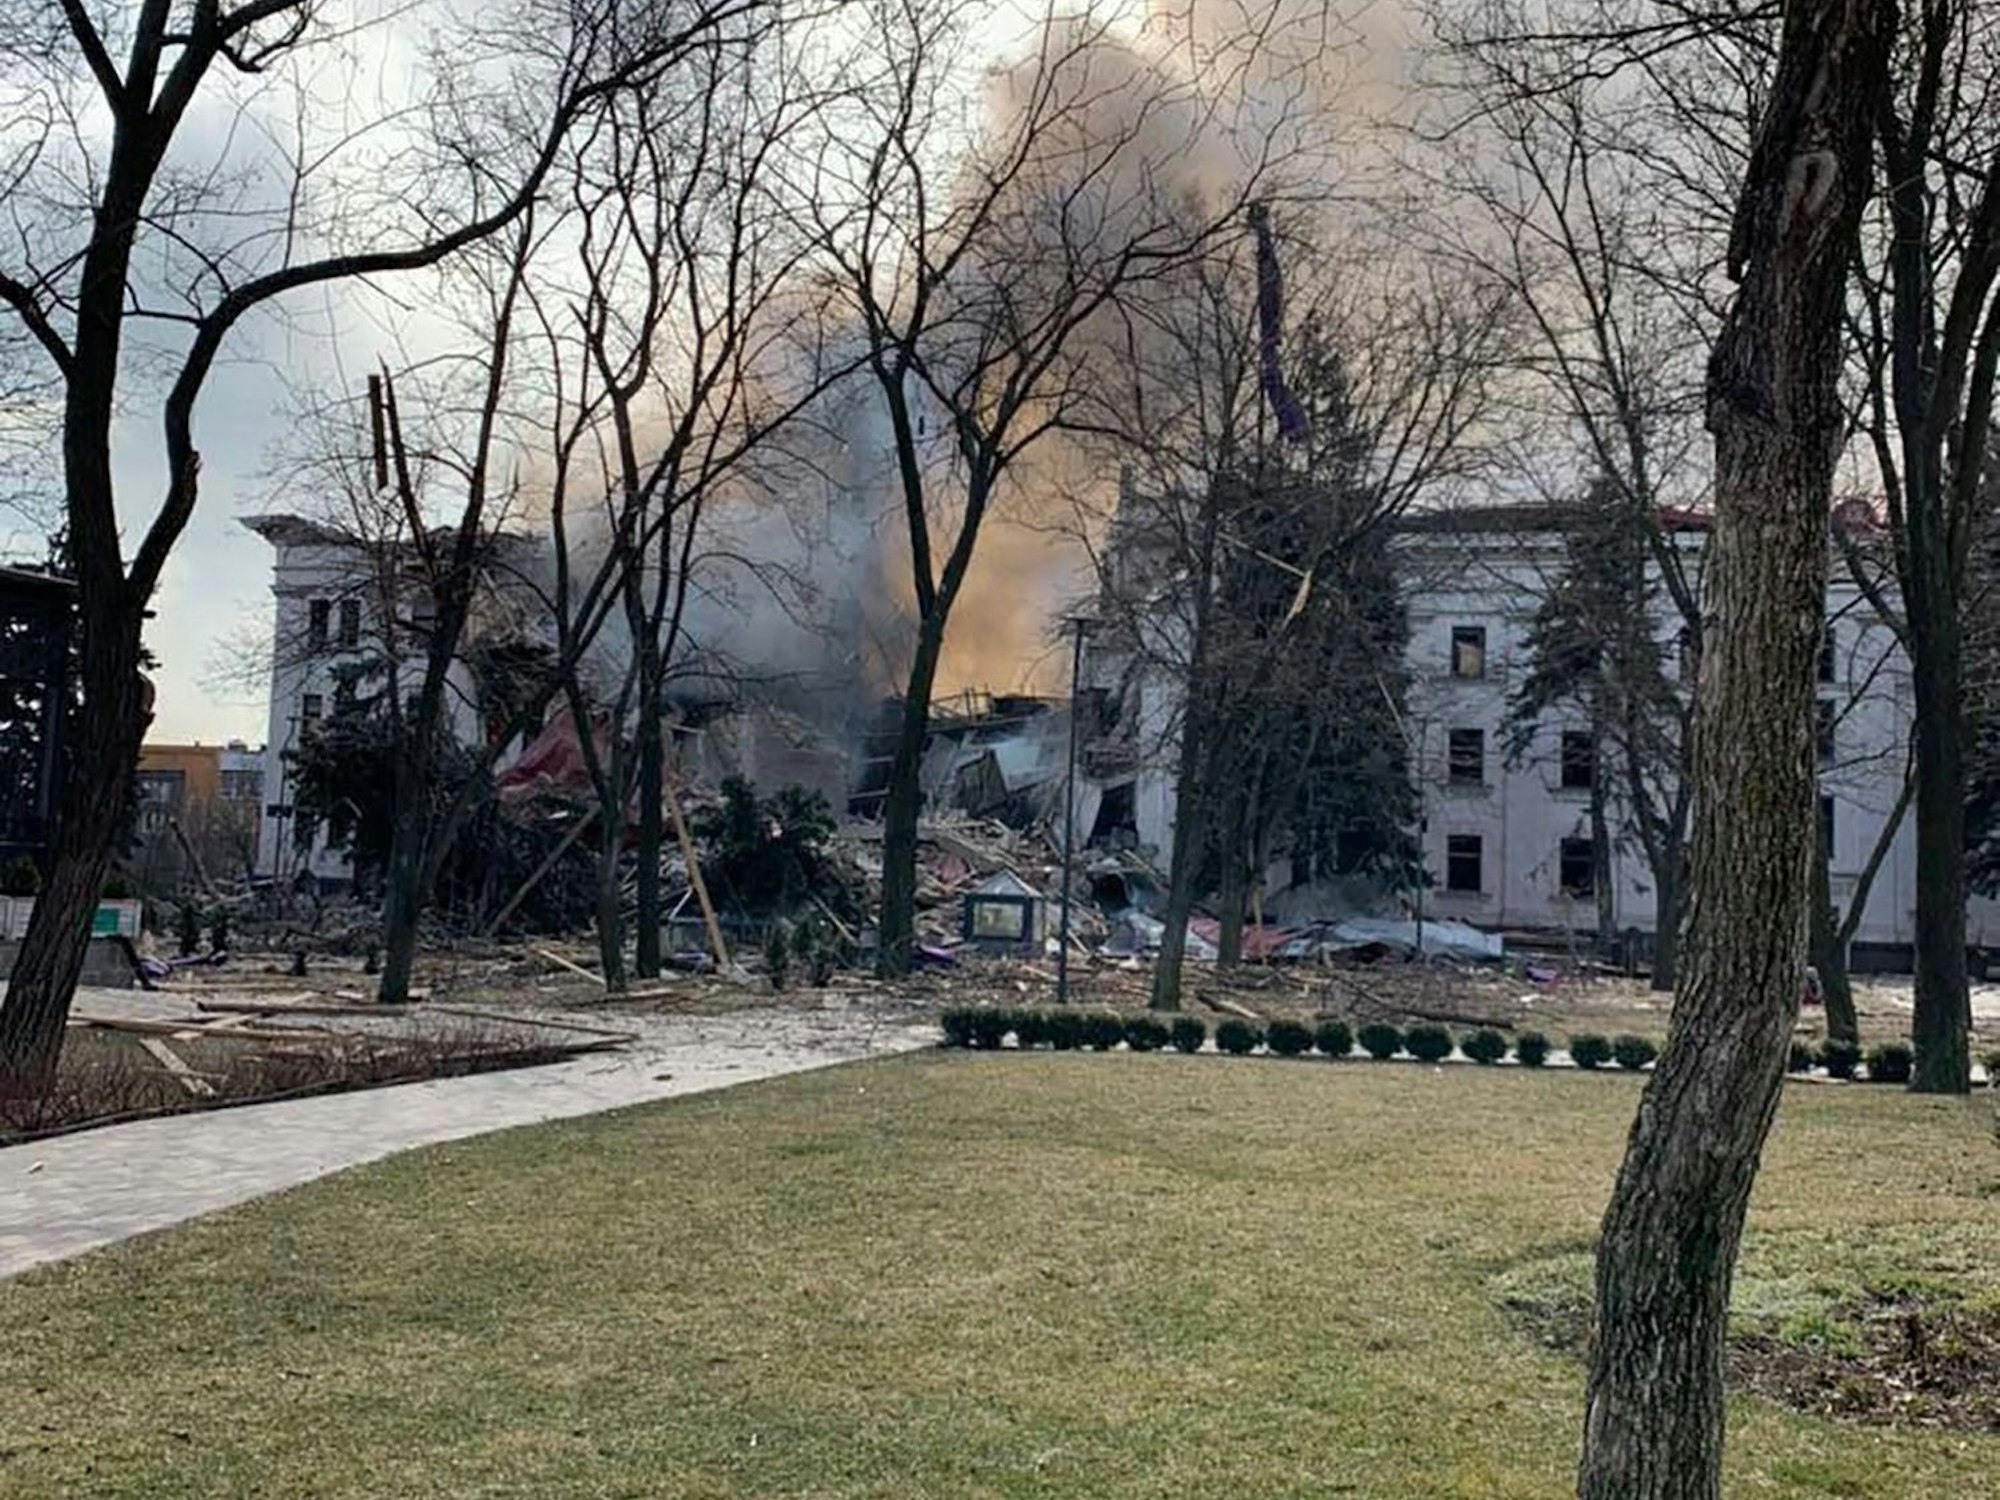 Dieses Handout-Bild, das am 16. März auf dem Telegramm-Account des Gouverneurs der östlichen Region Donezk, Pawlo Kirilenko, veröffentlicht wurde, zeigt das Theater in Mariupol, das nach einem russischen Angriff völlig zerstört wurde.